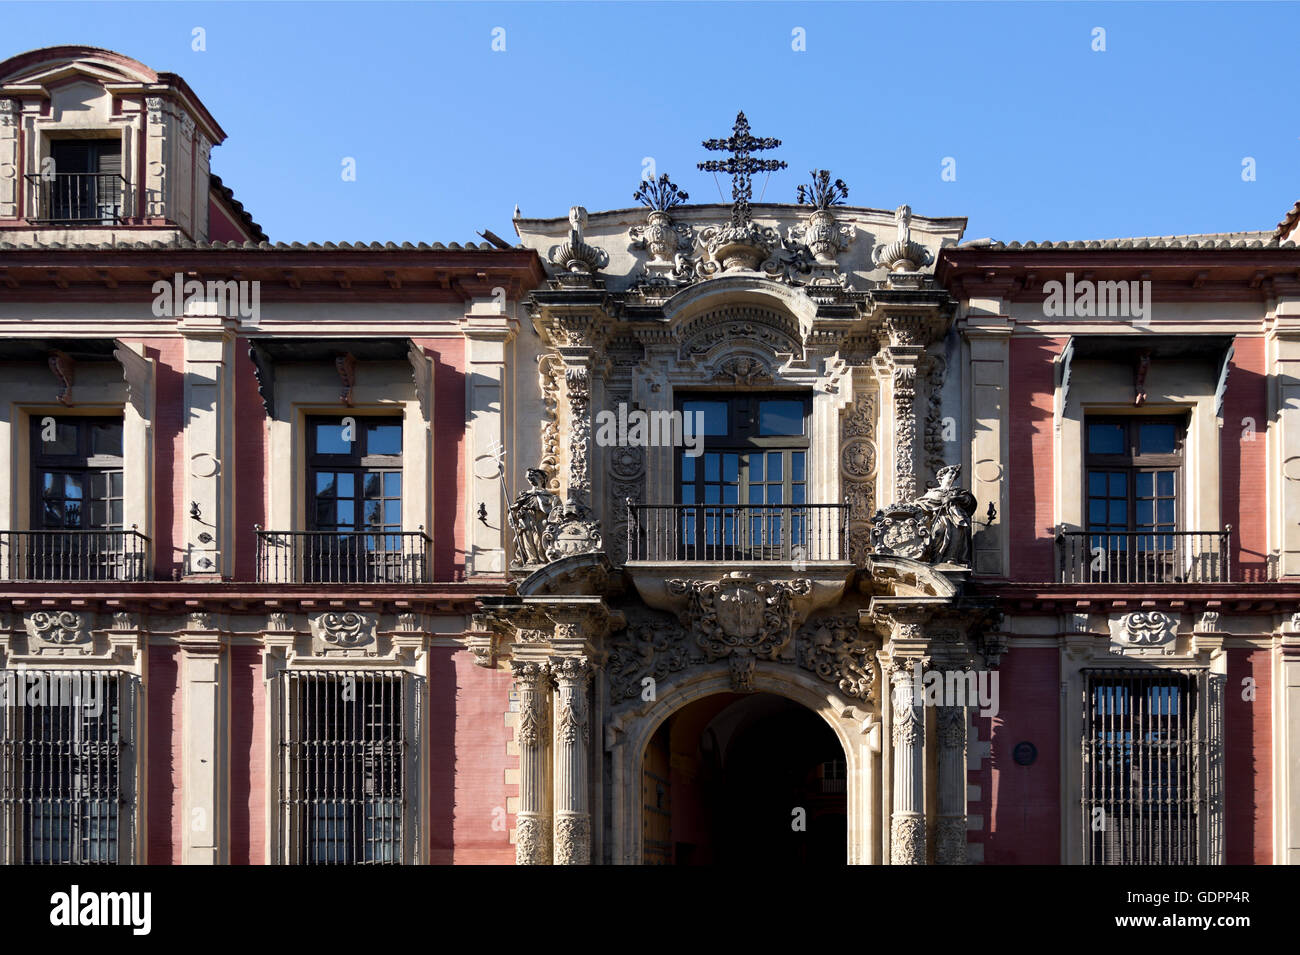 La façade de style architectural baroque espagnol Archevêque Palais de Séville, Espagne Banque D'Images